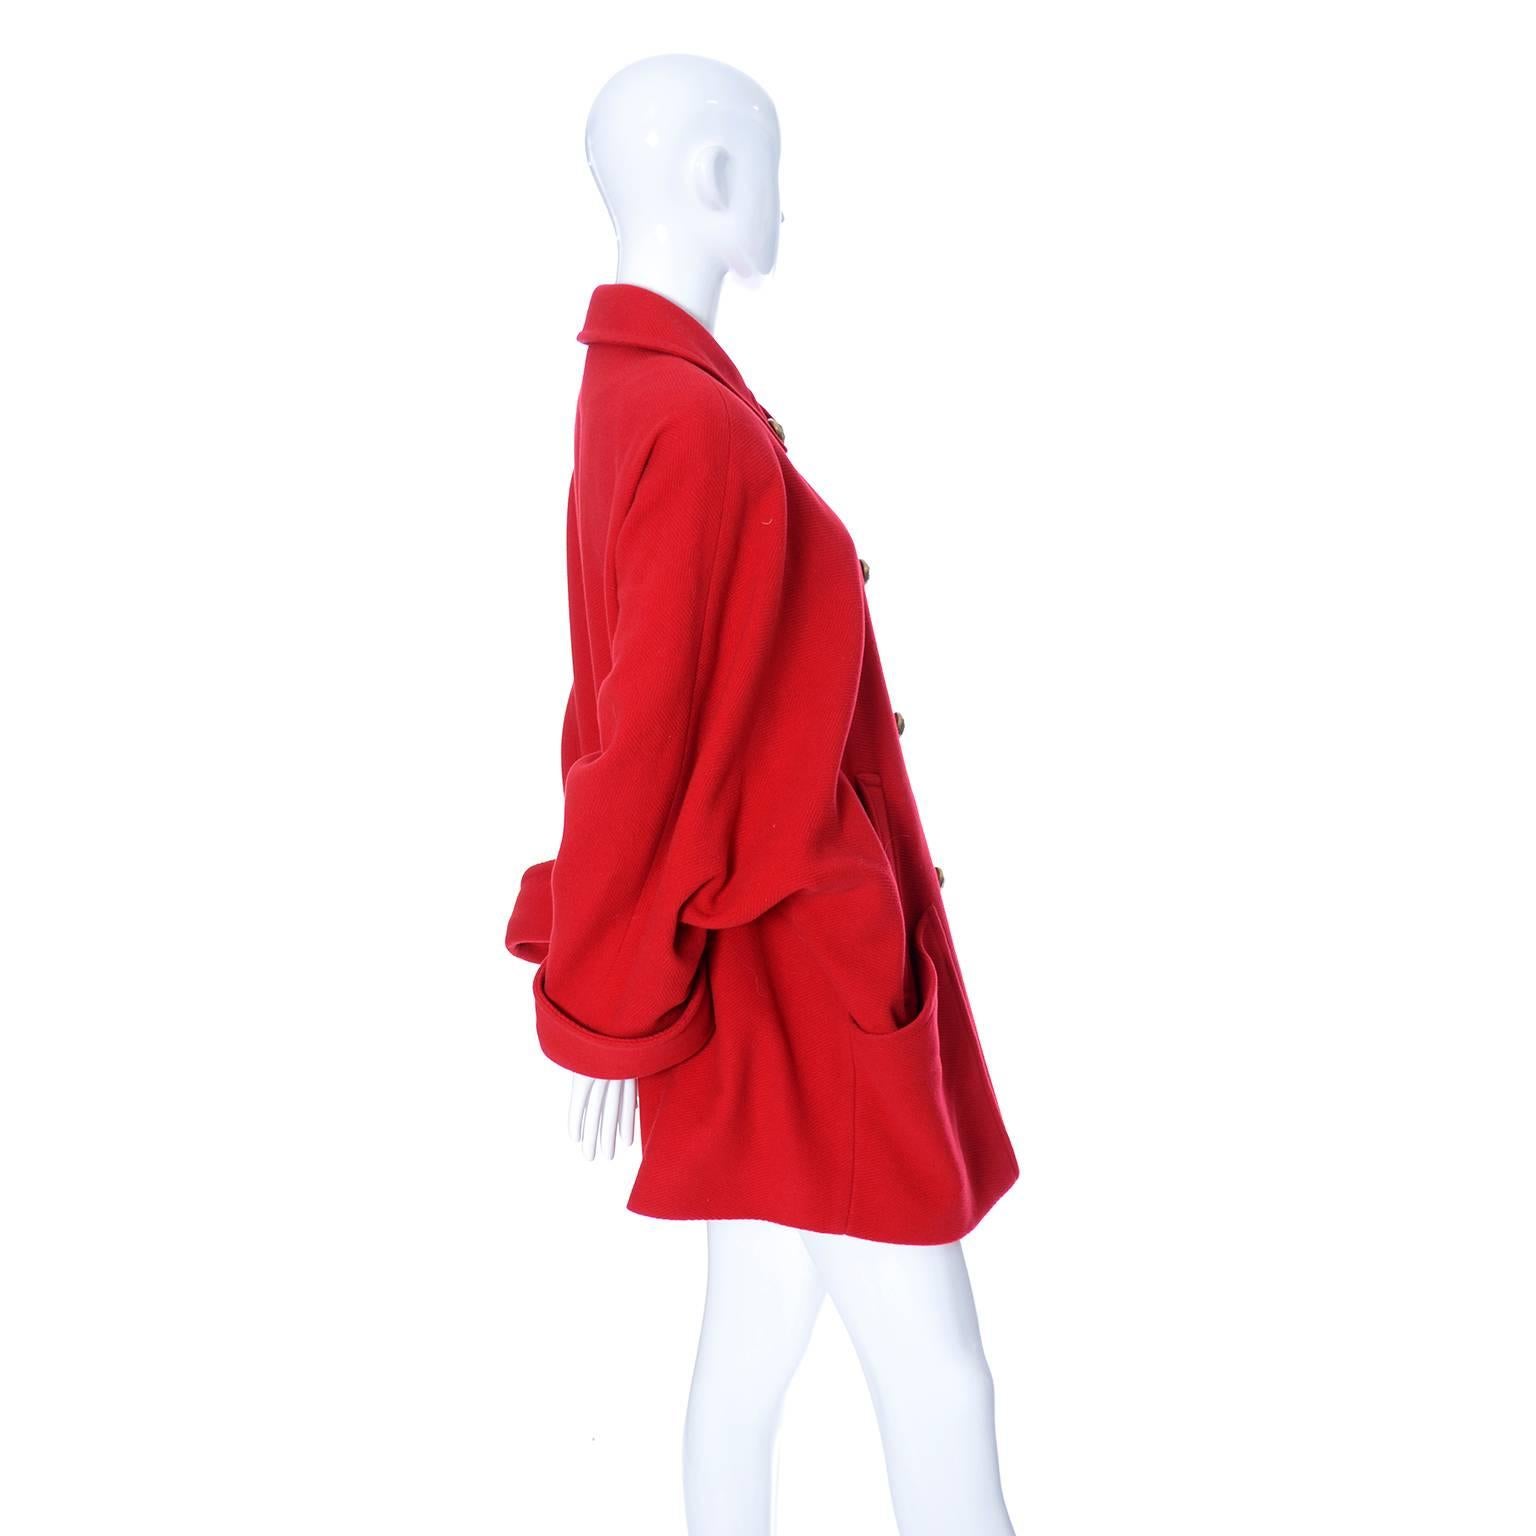 Women's Guy Laroche Boutique 1980s Vintage Coat in Cherry Red Wool W Dolman Sleeves